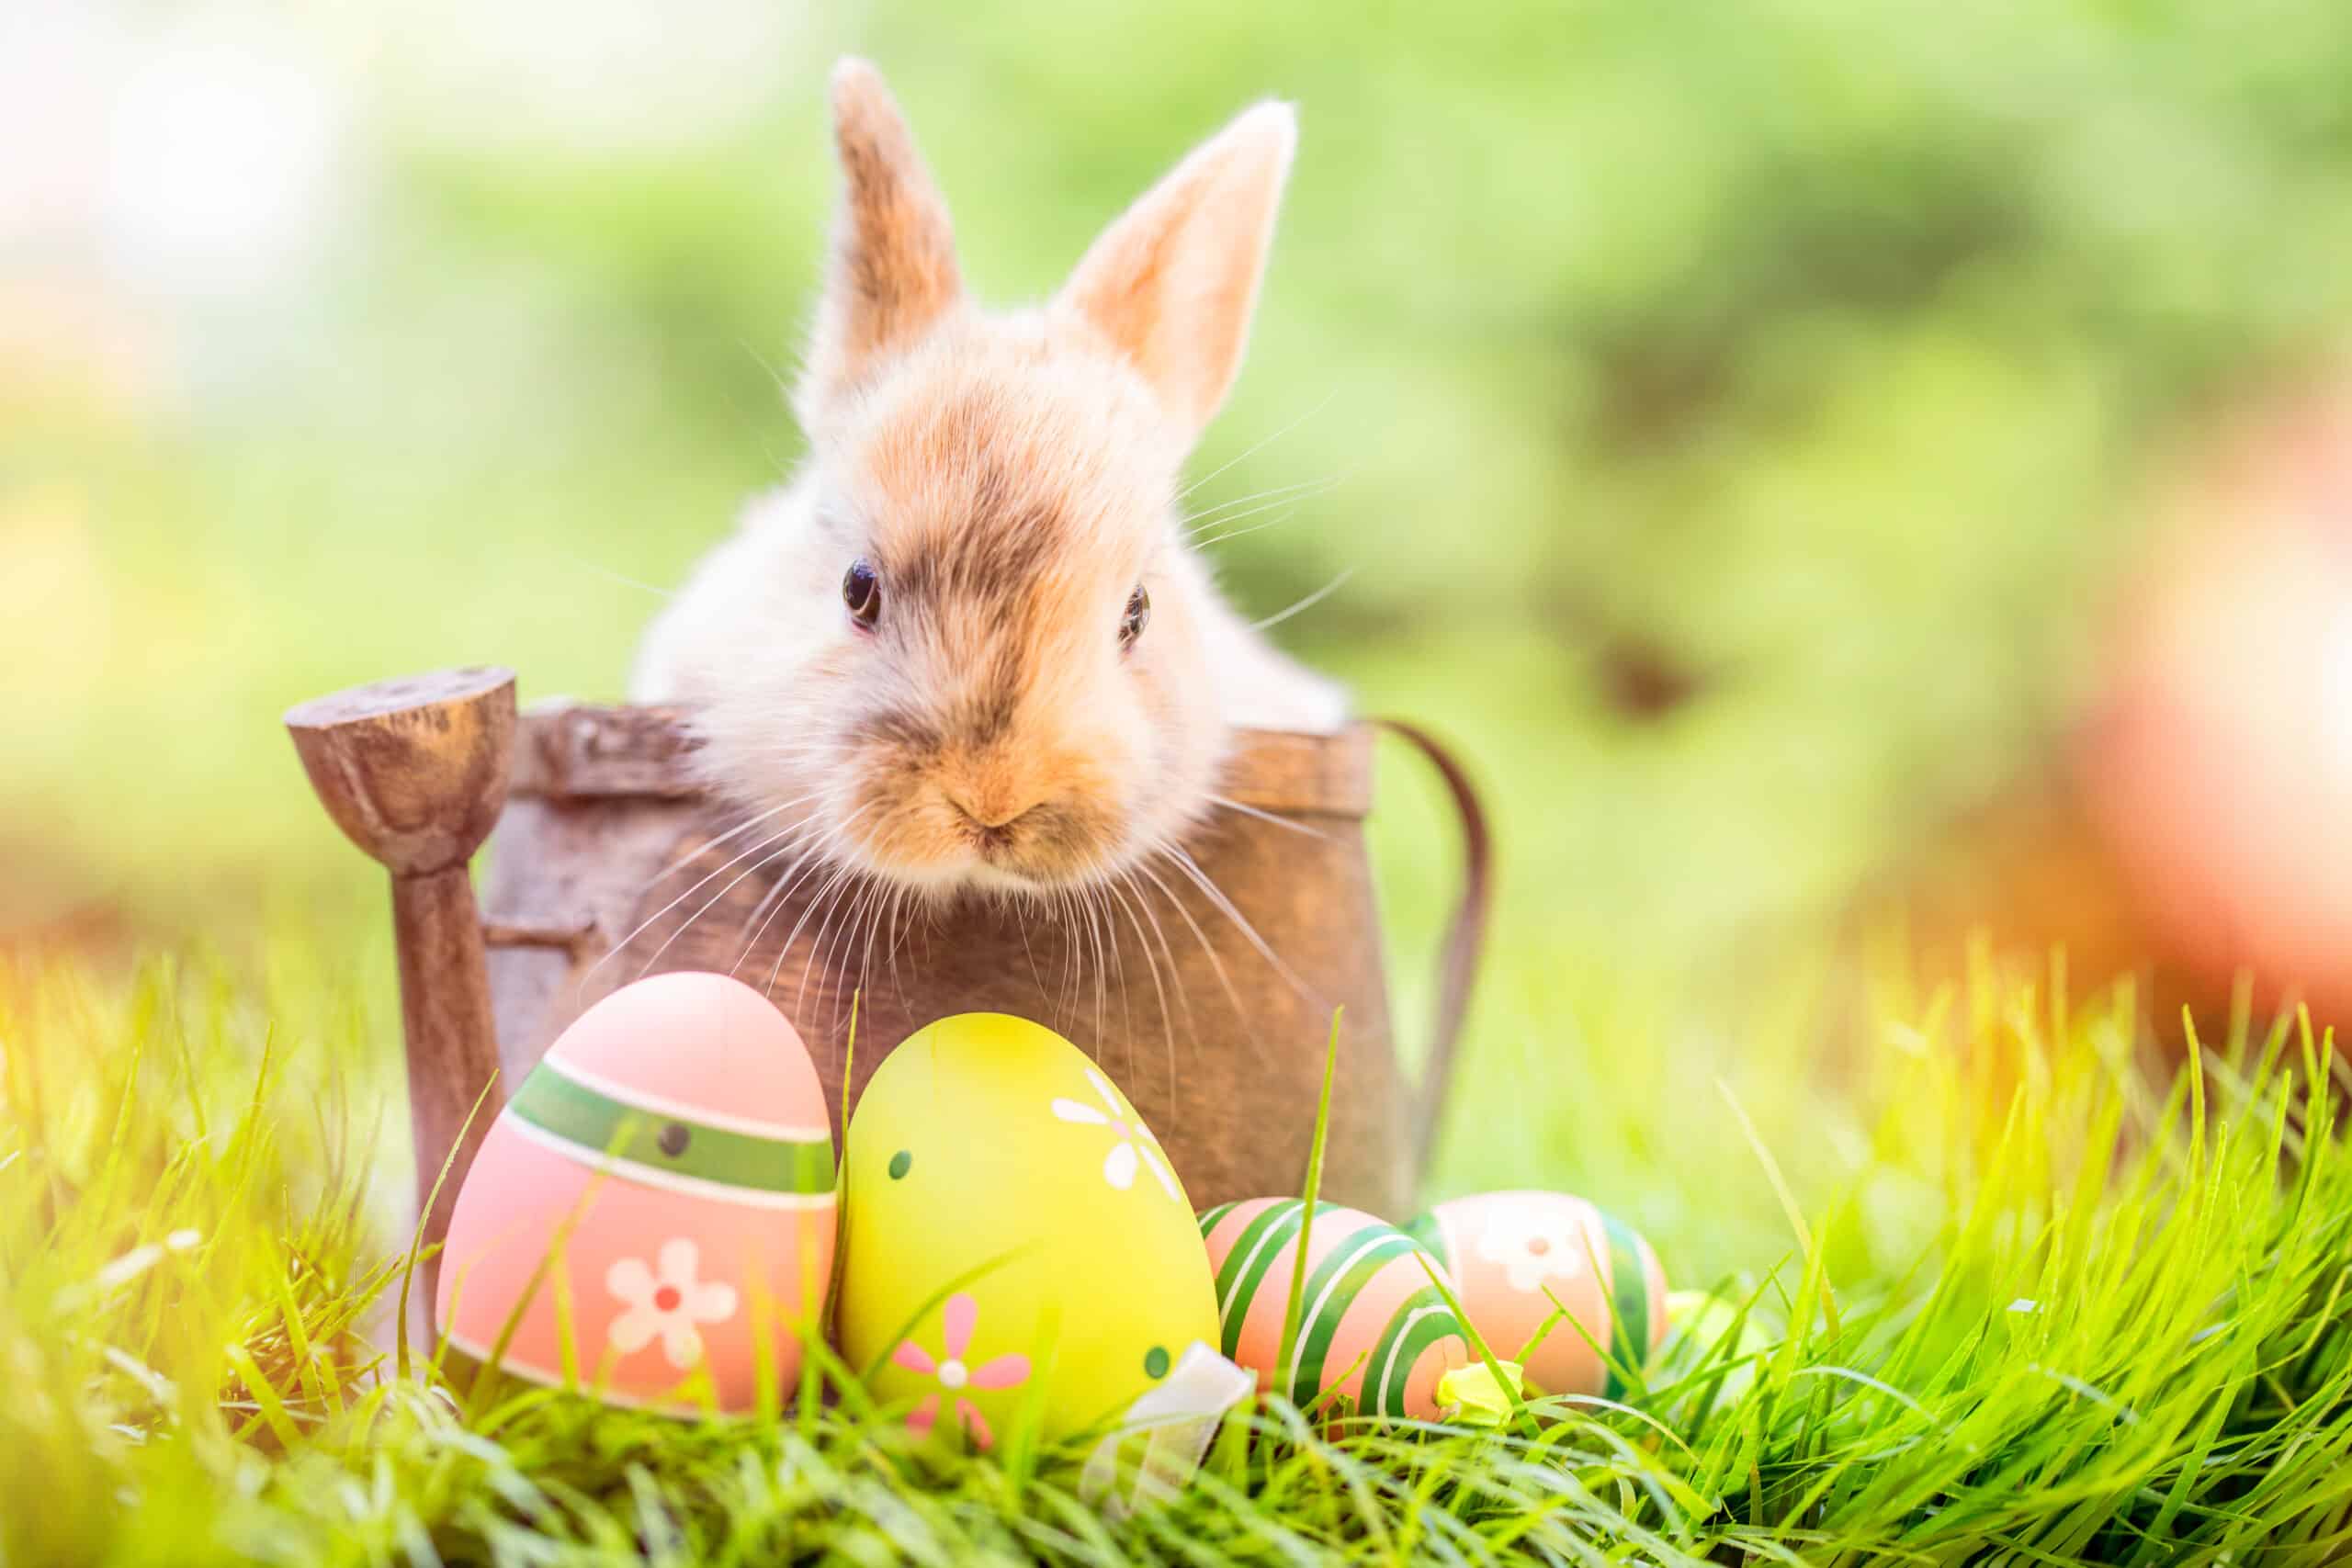 IST wünscht erholsame Feiertage und schöne Ostern!